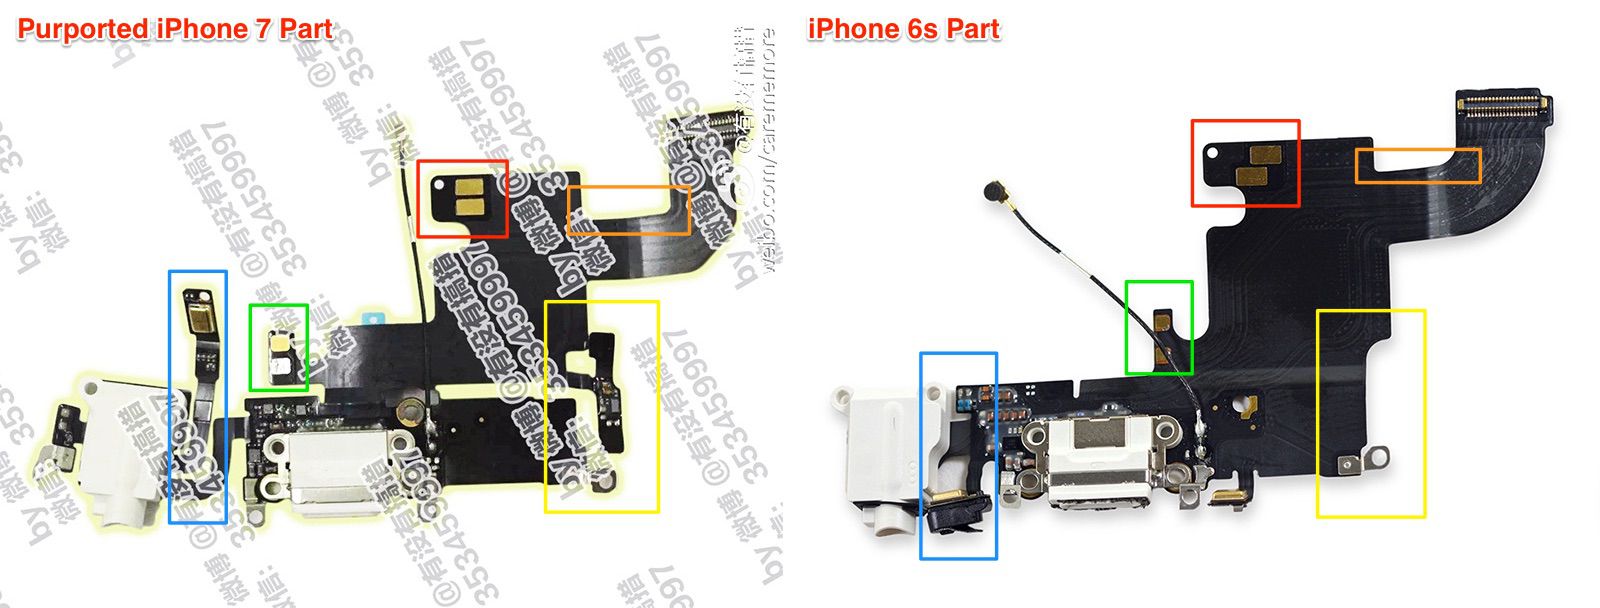 Standaard Geweldig Anekdote Possible iPhone 7 Headphone Jack Depicted in New Image - MacRumors